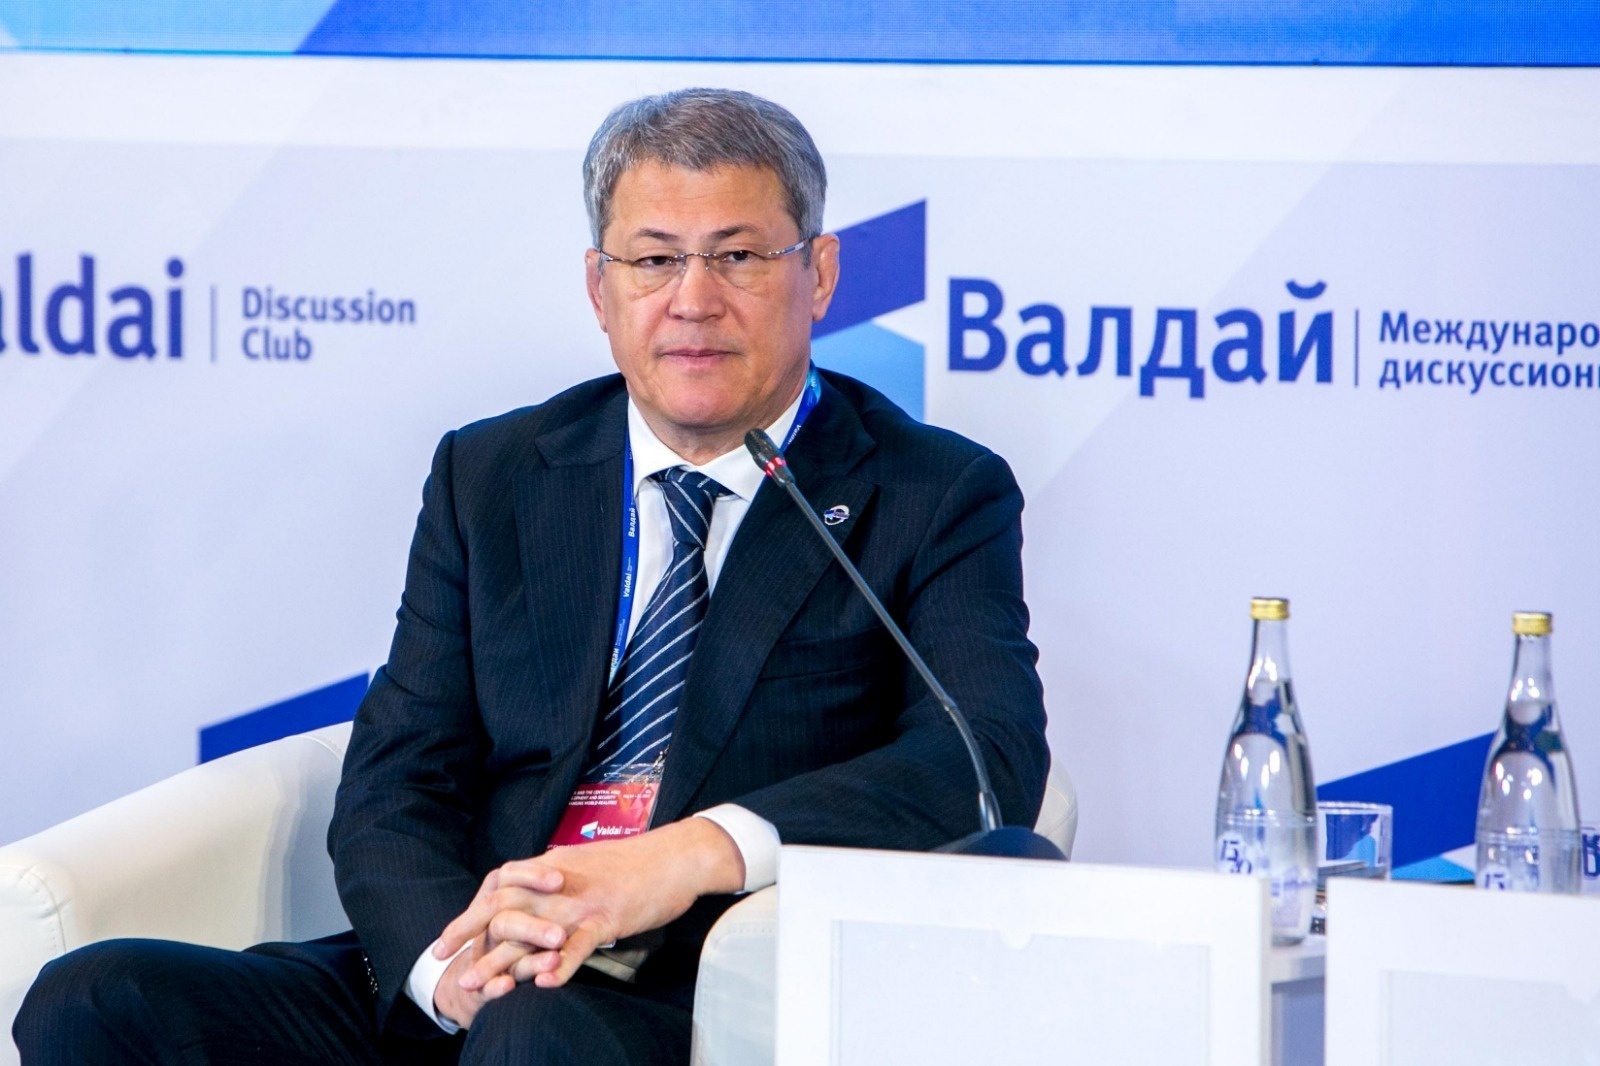 Радий Хабиров: четверть внешнеторгового оборота Башкирии приходится на страны Центральной Азии